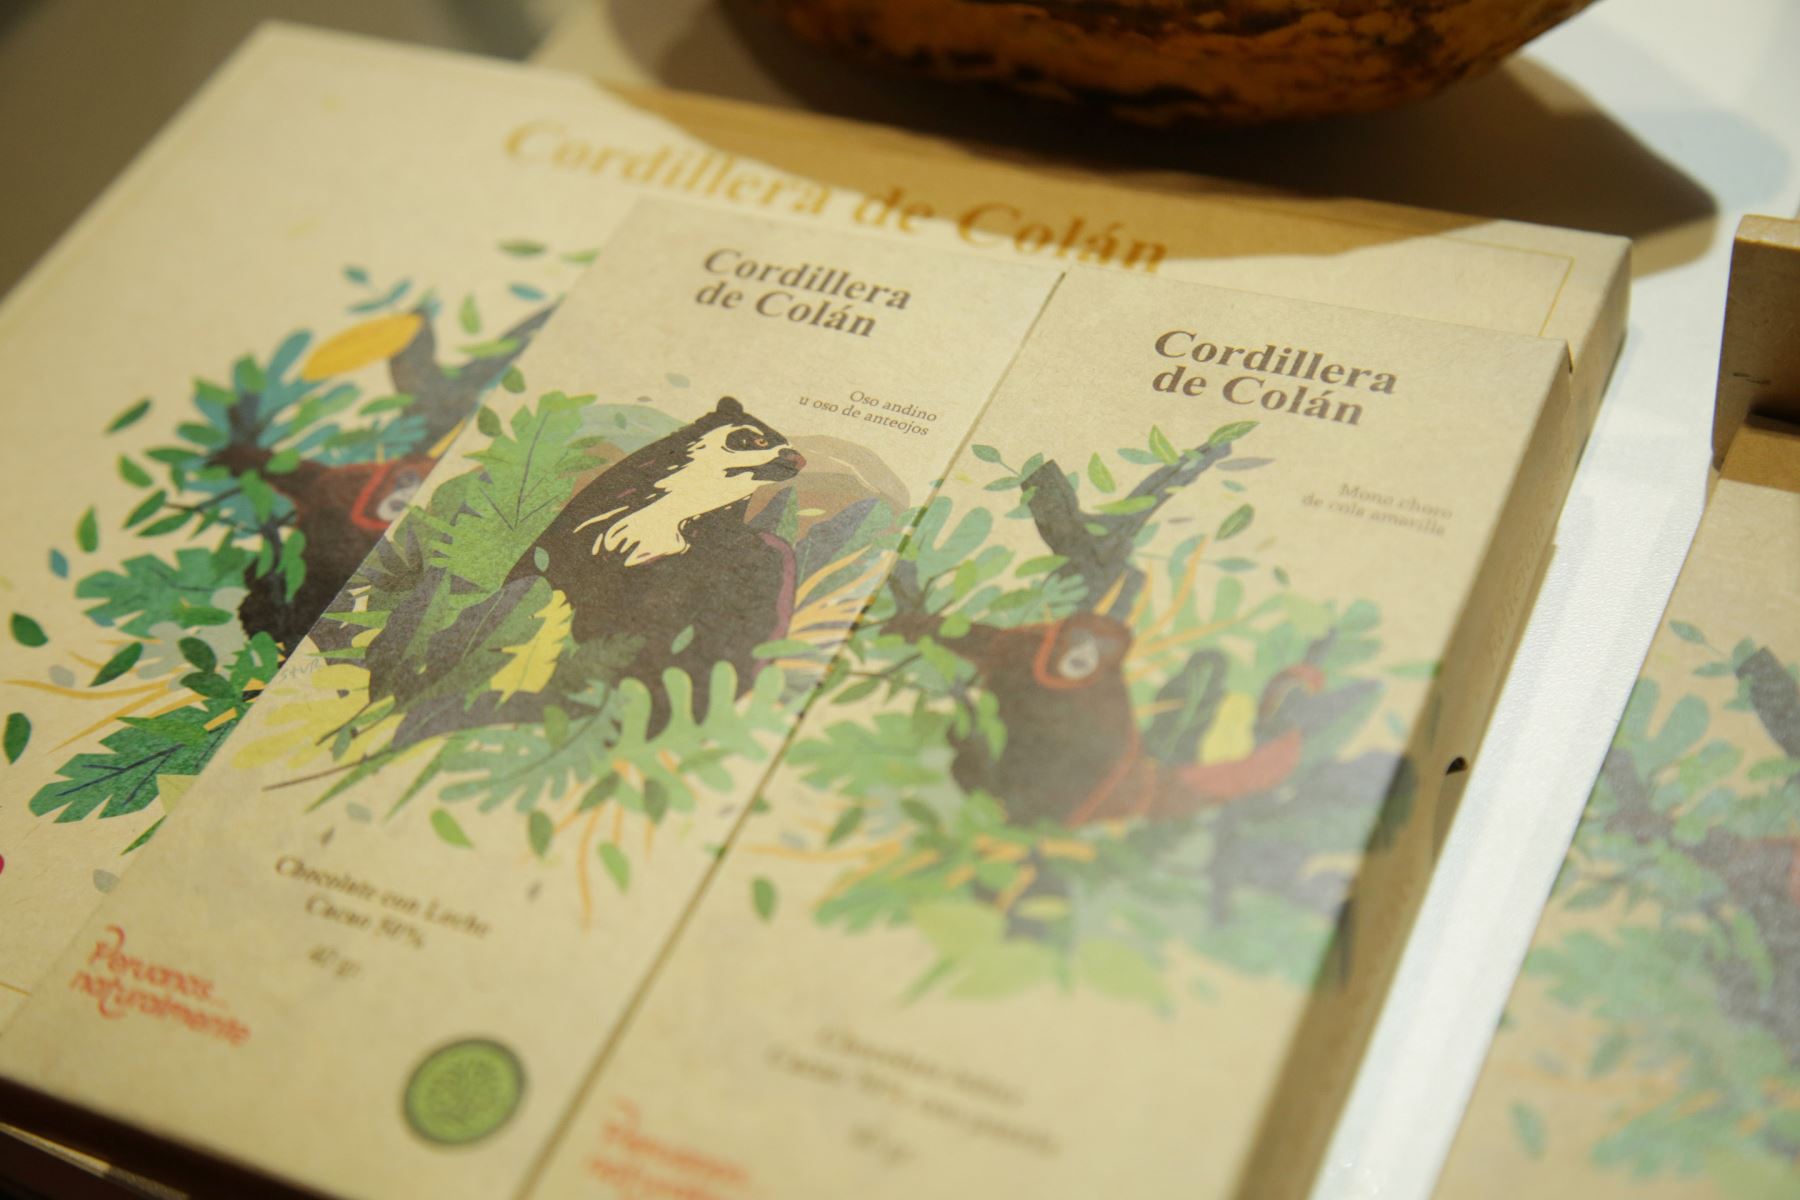 La marca de chocolates Cordillera de Colán presentó su edición especial de chocolates alusivos a especies de fauna silvestre de la región Amazonas. Foto: ANDINA/Sernanp